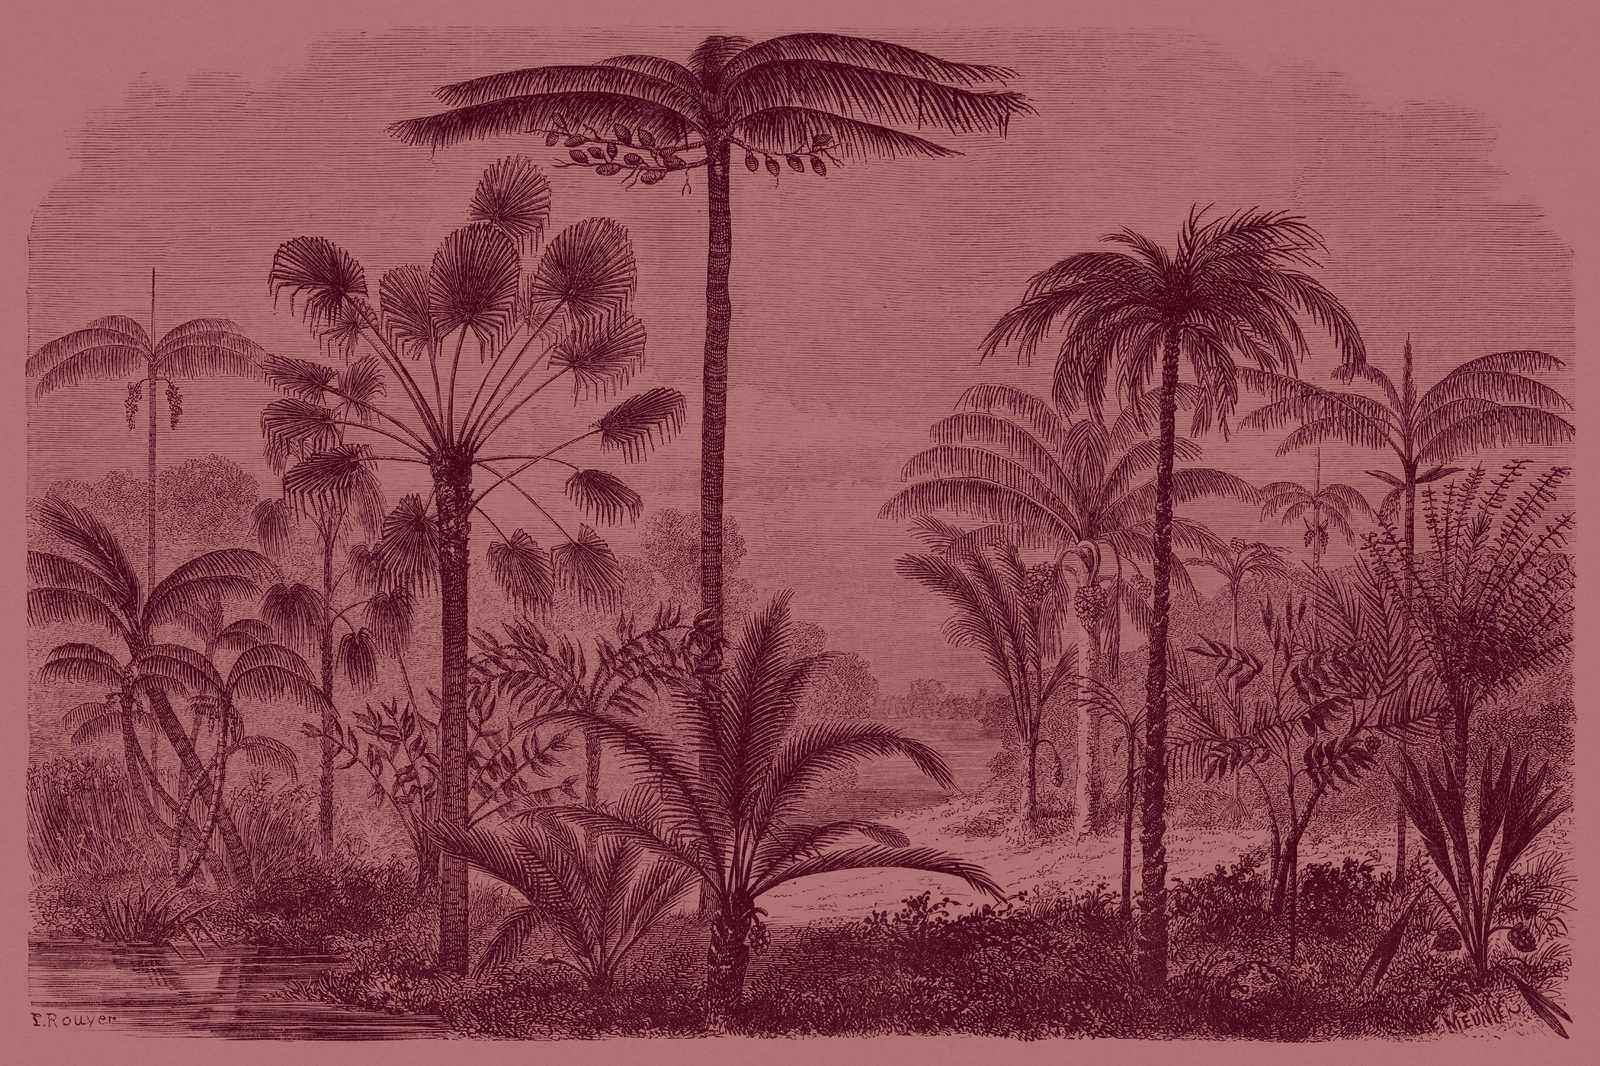             Jurassic 2 - Leinwandbild Dschungelmotiv Kupferstich – 1,20 m x 0,80 m
        